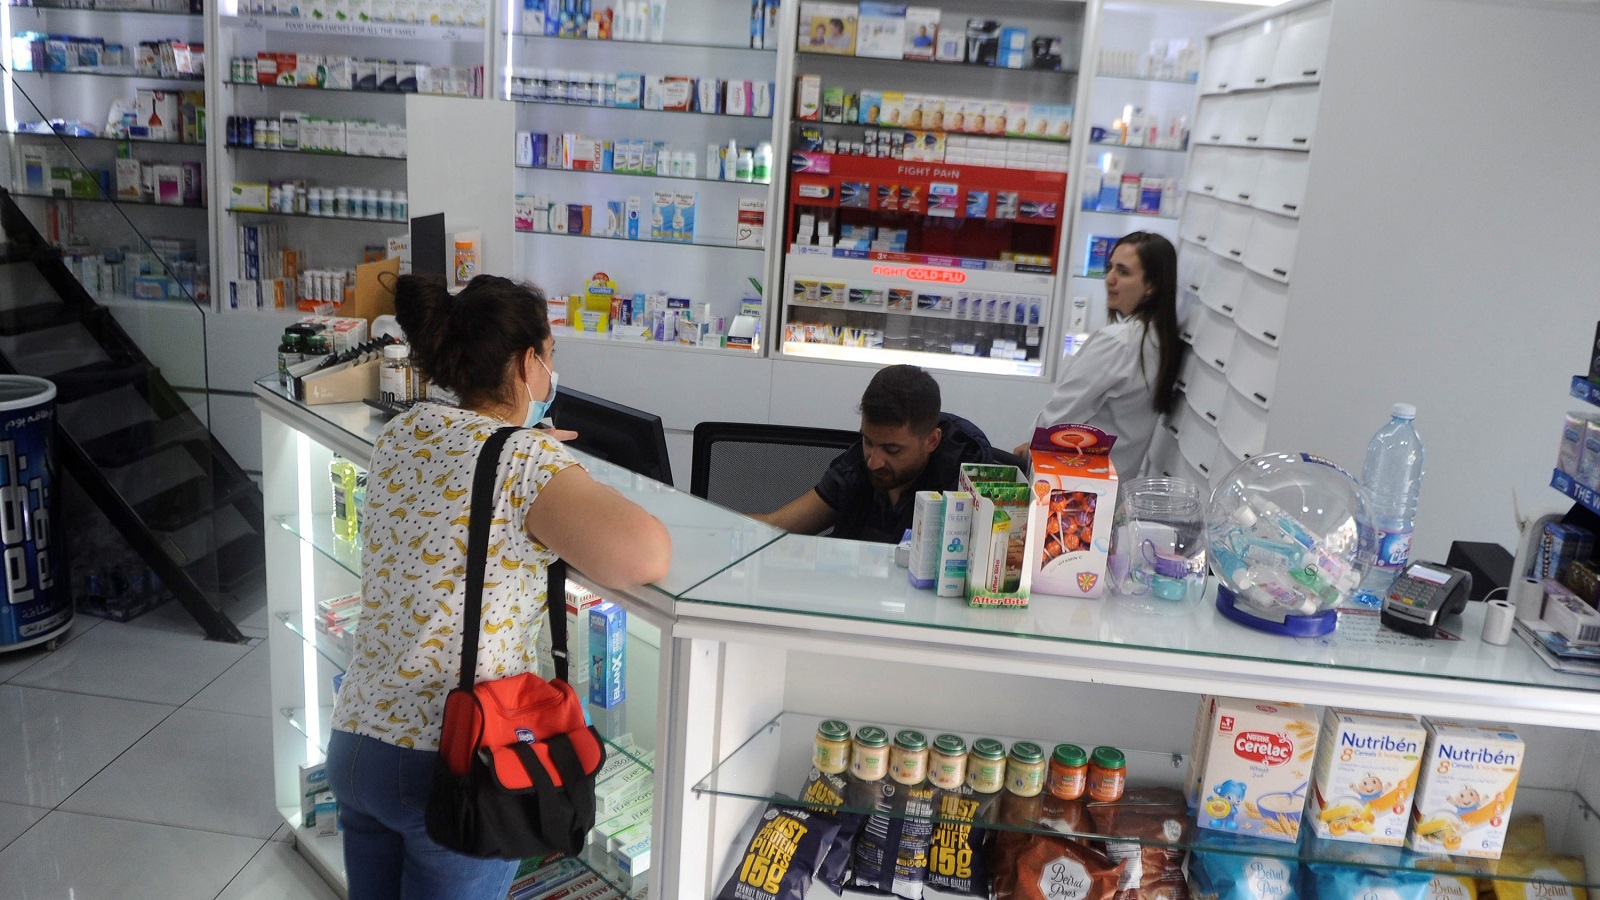 أزمة الدواء مفتعلة: التجار يرفضون بيع ما تم استيراده